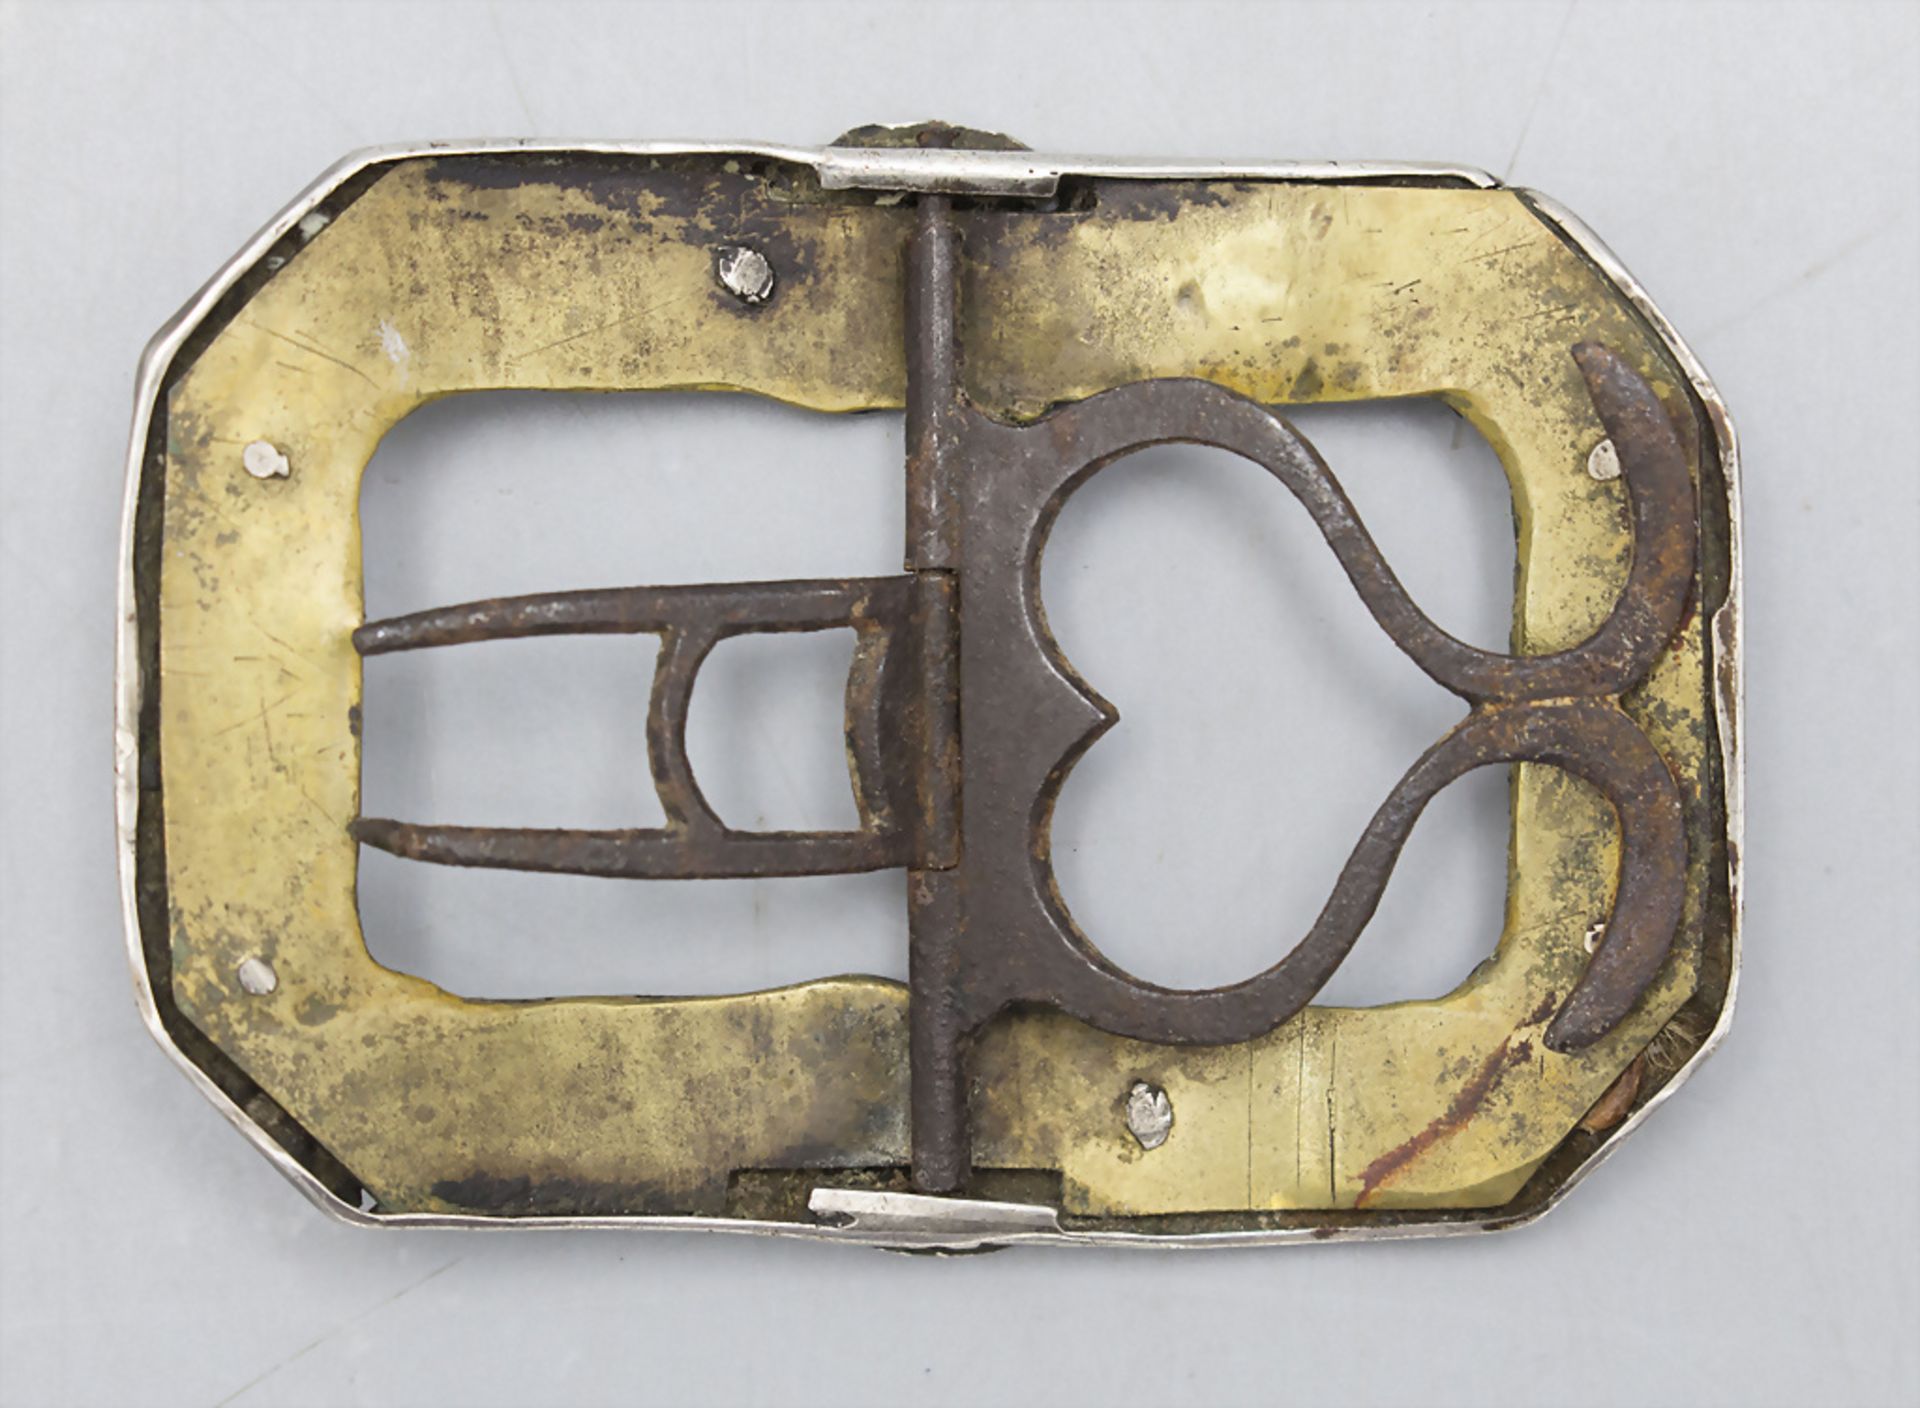 Silber Gürtelschließe / A silver belt buckle, Anfang 19. Jh. - Bild 2 aus 2